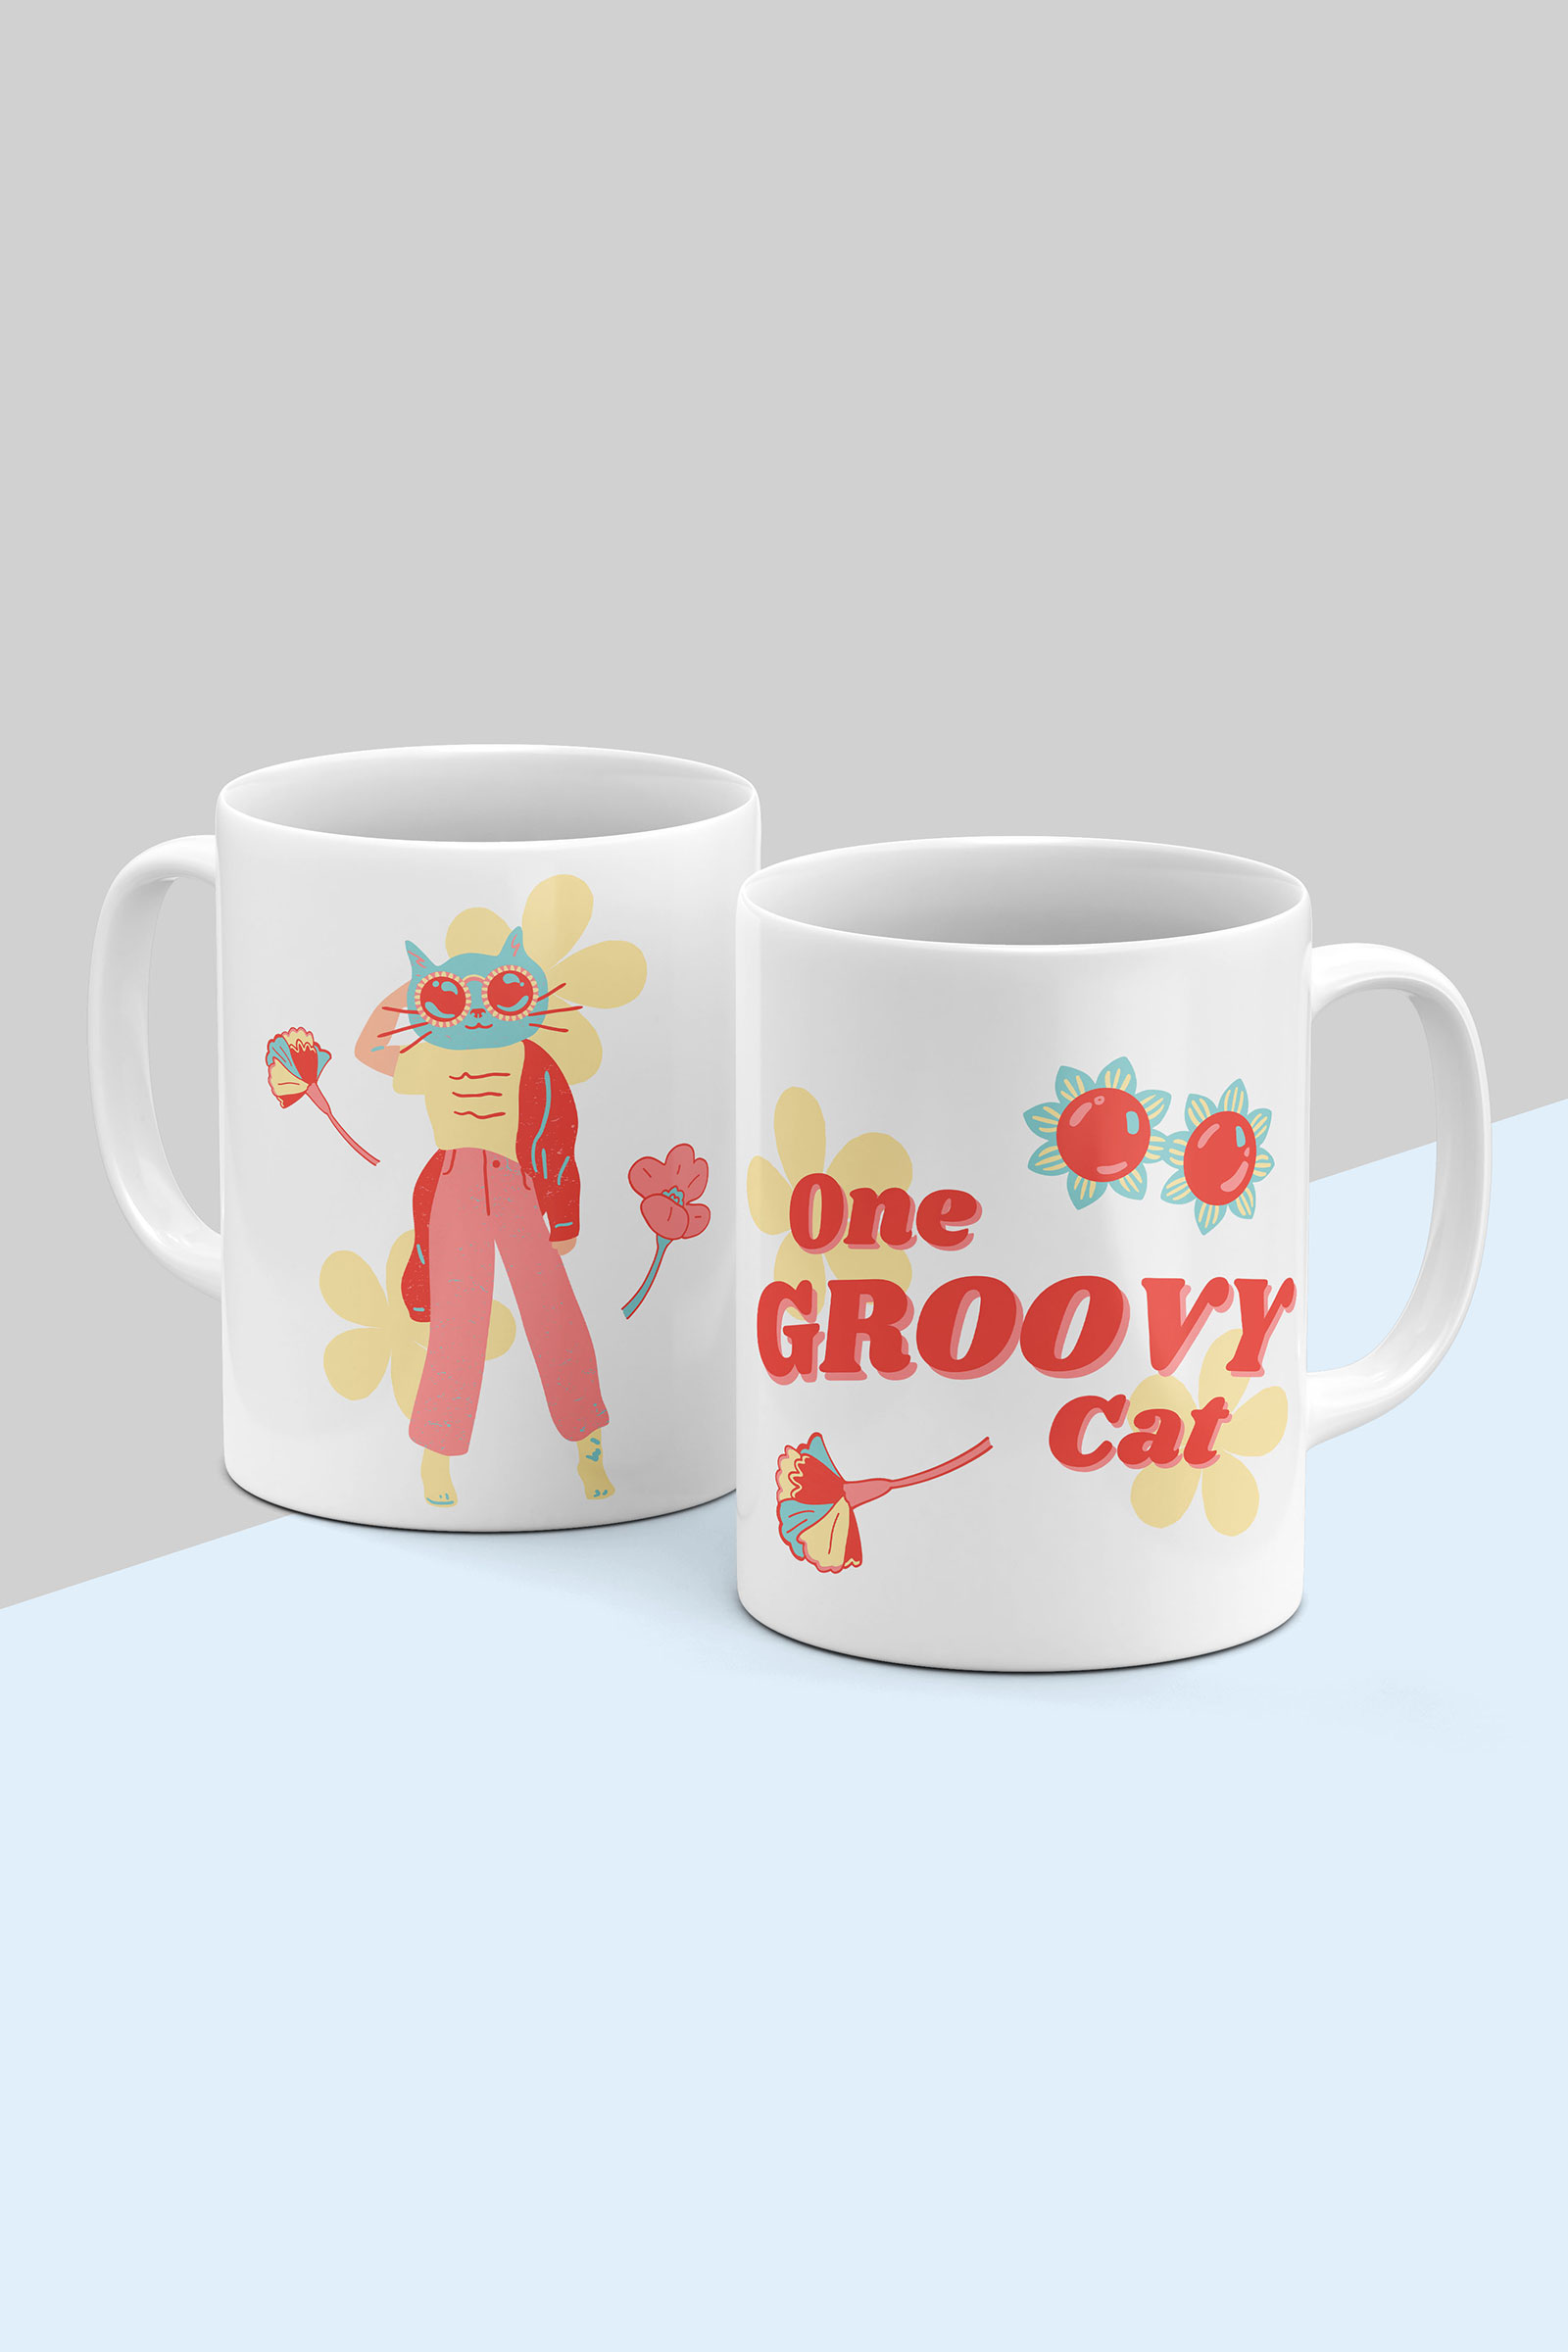 Groovy Cat Mug